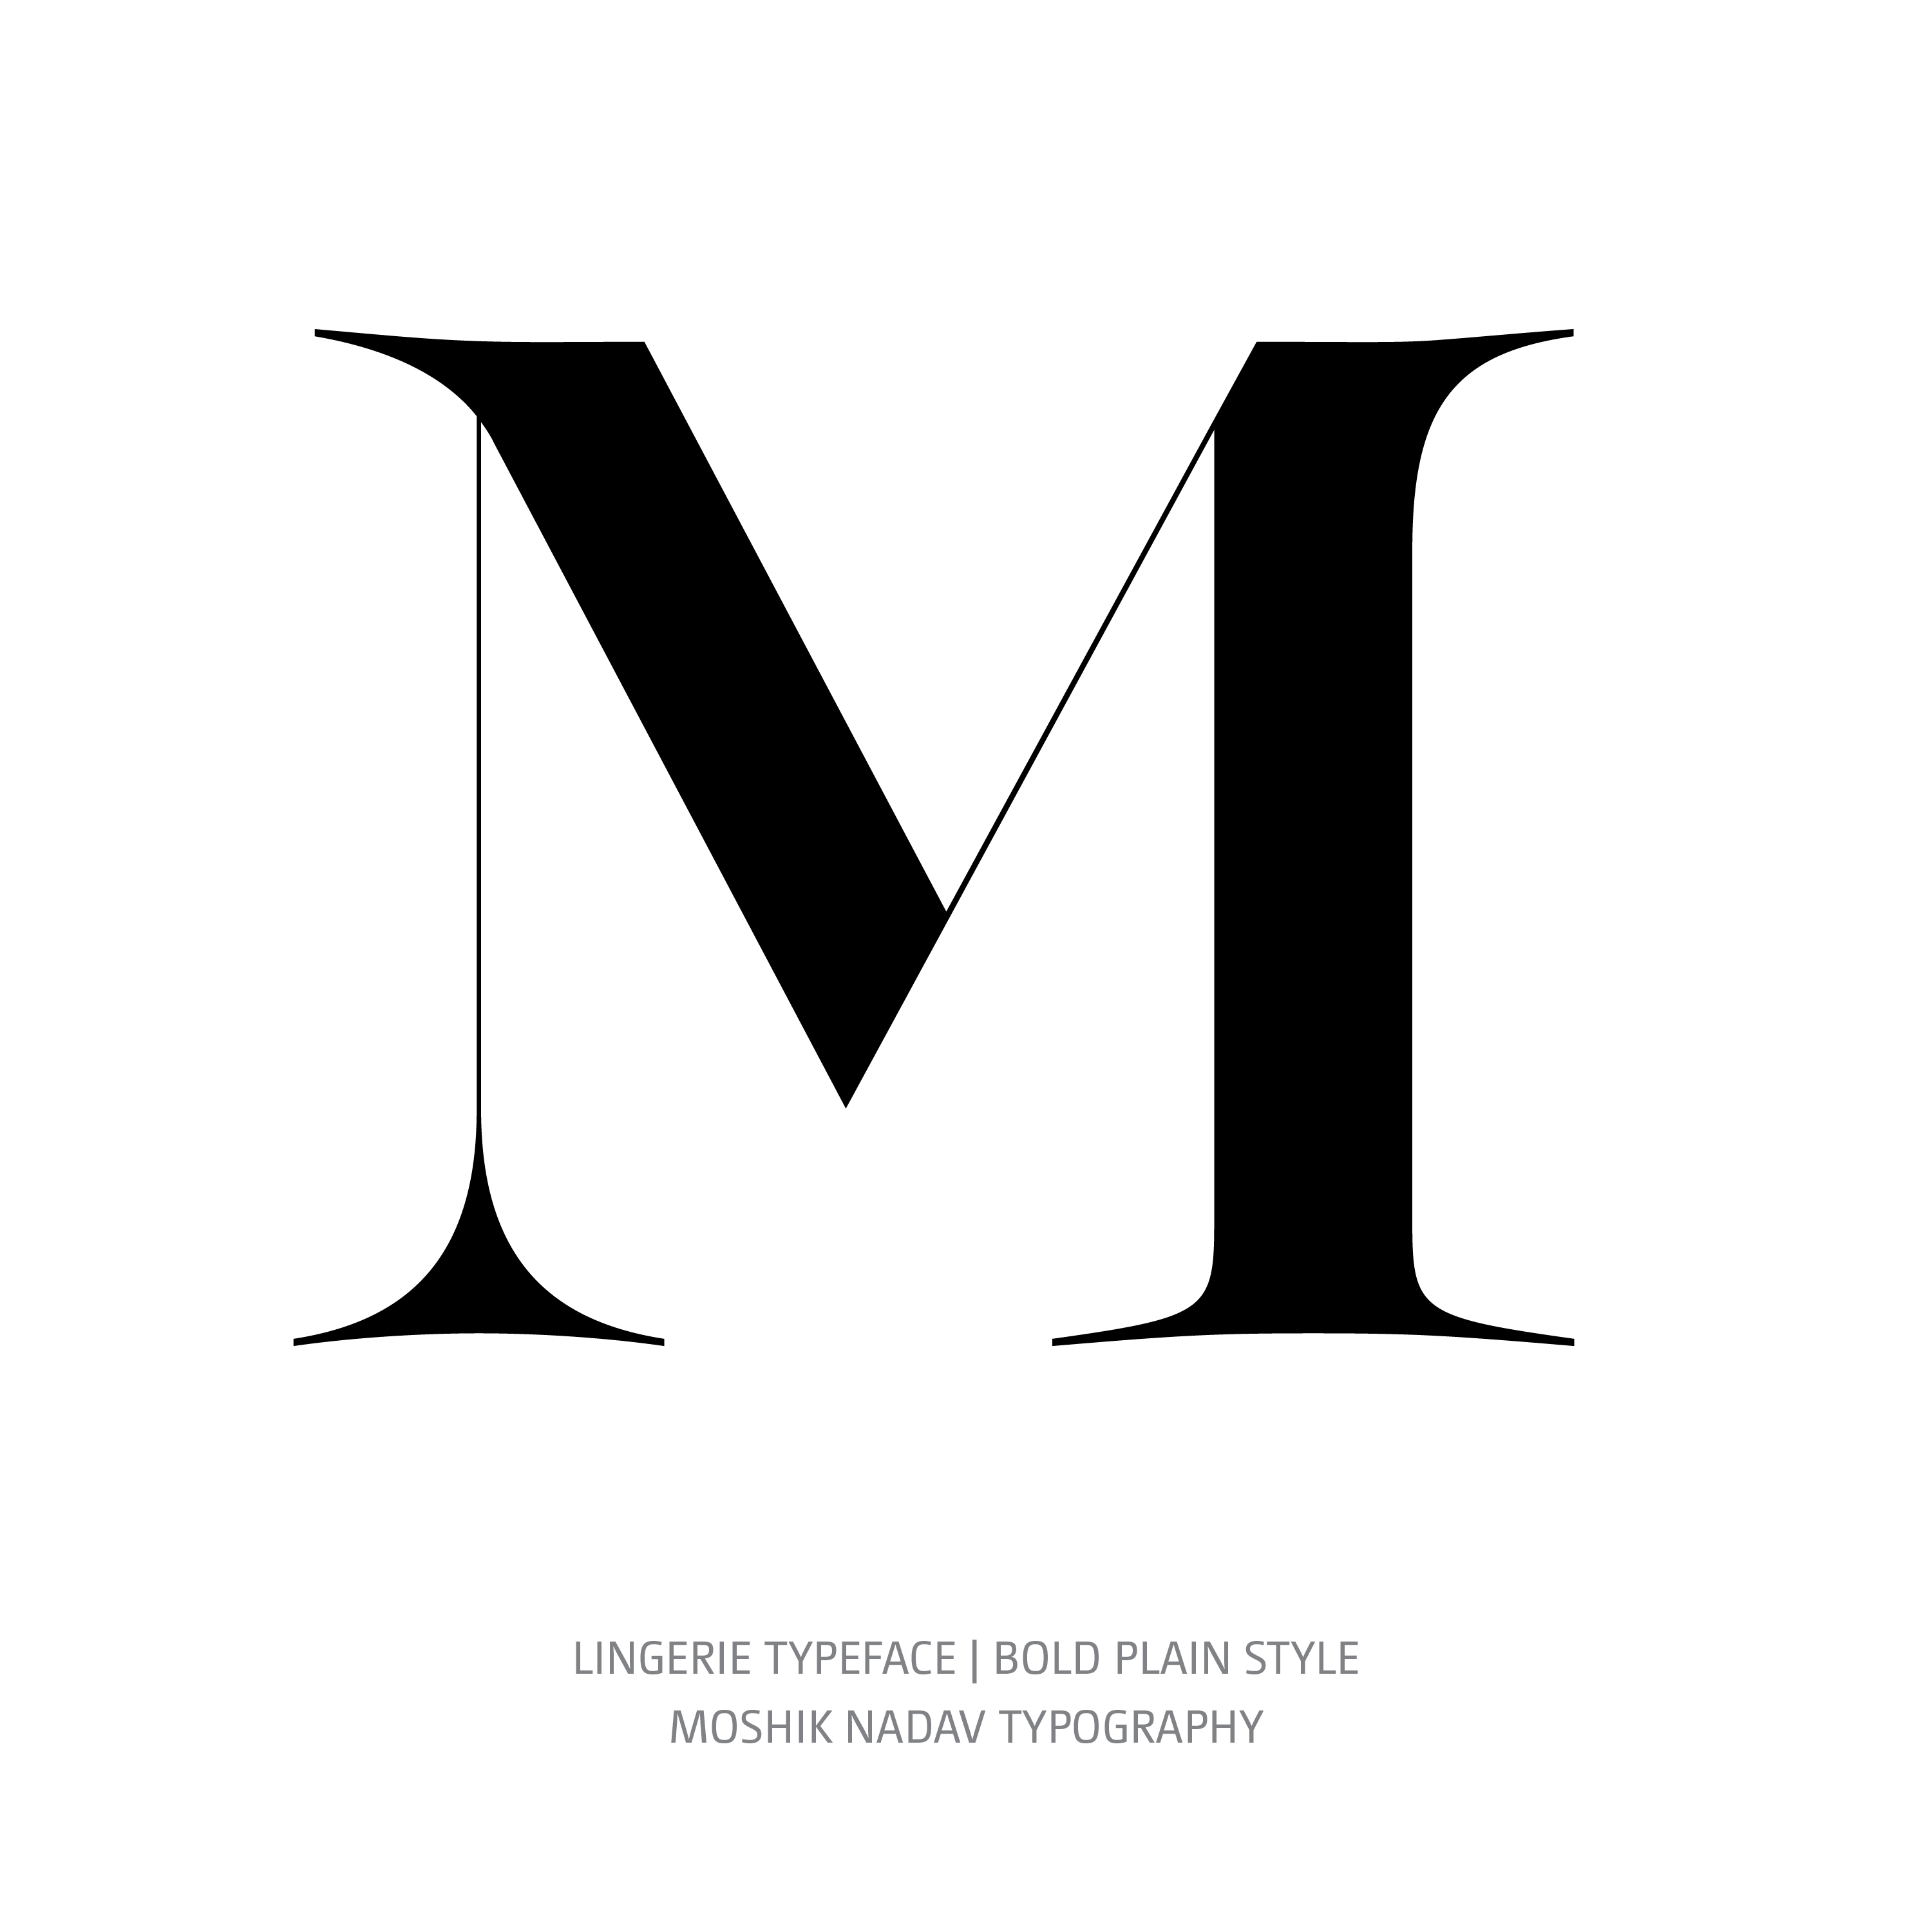 Lingerie Typeface Bold Plain M